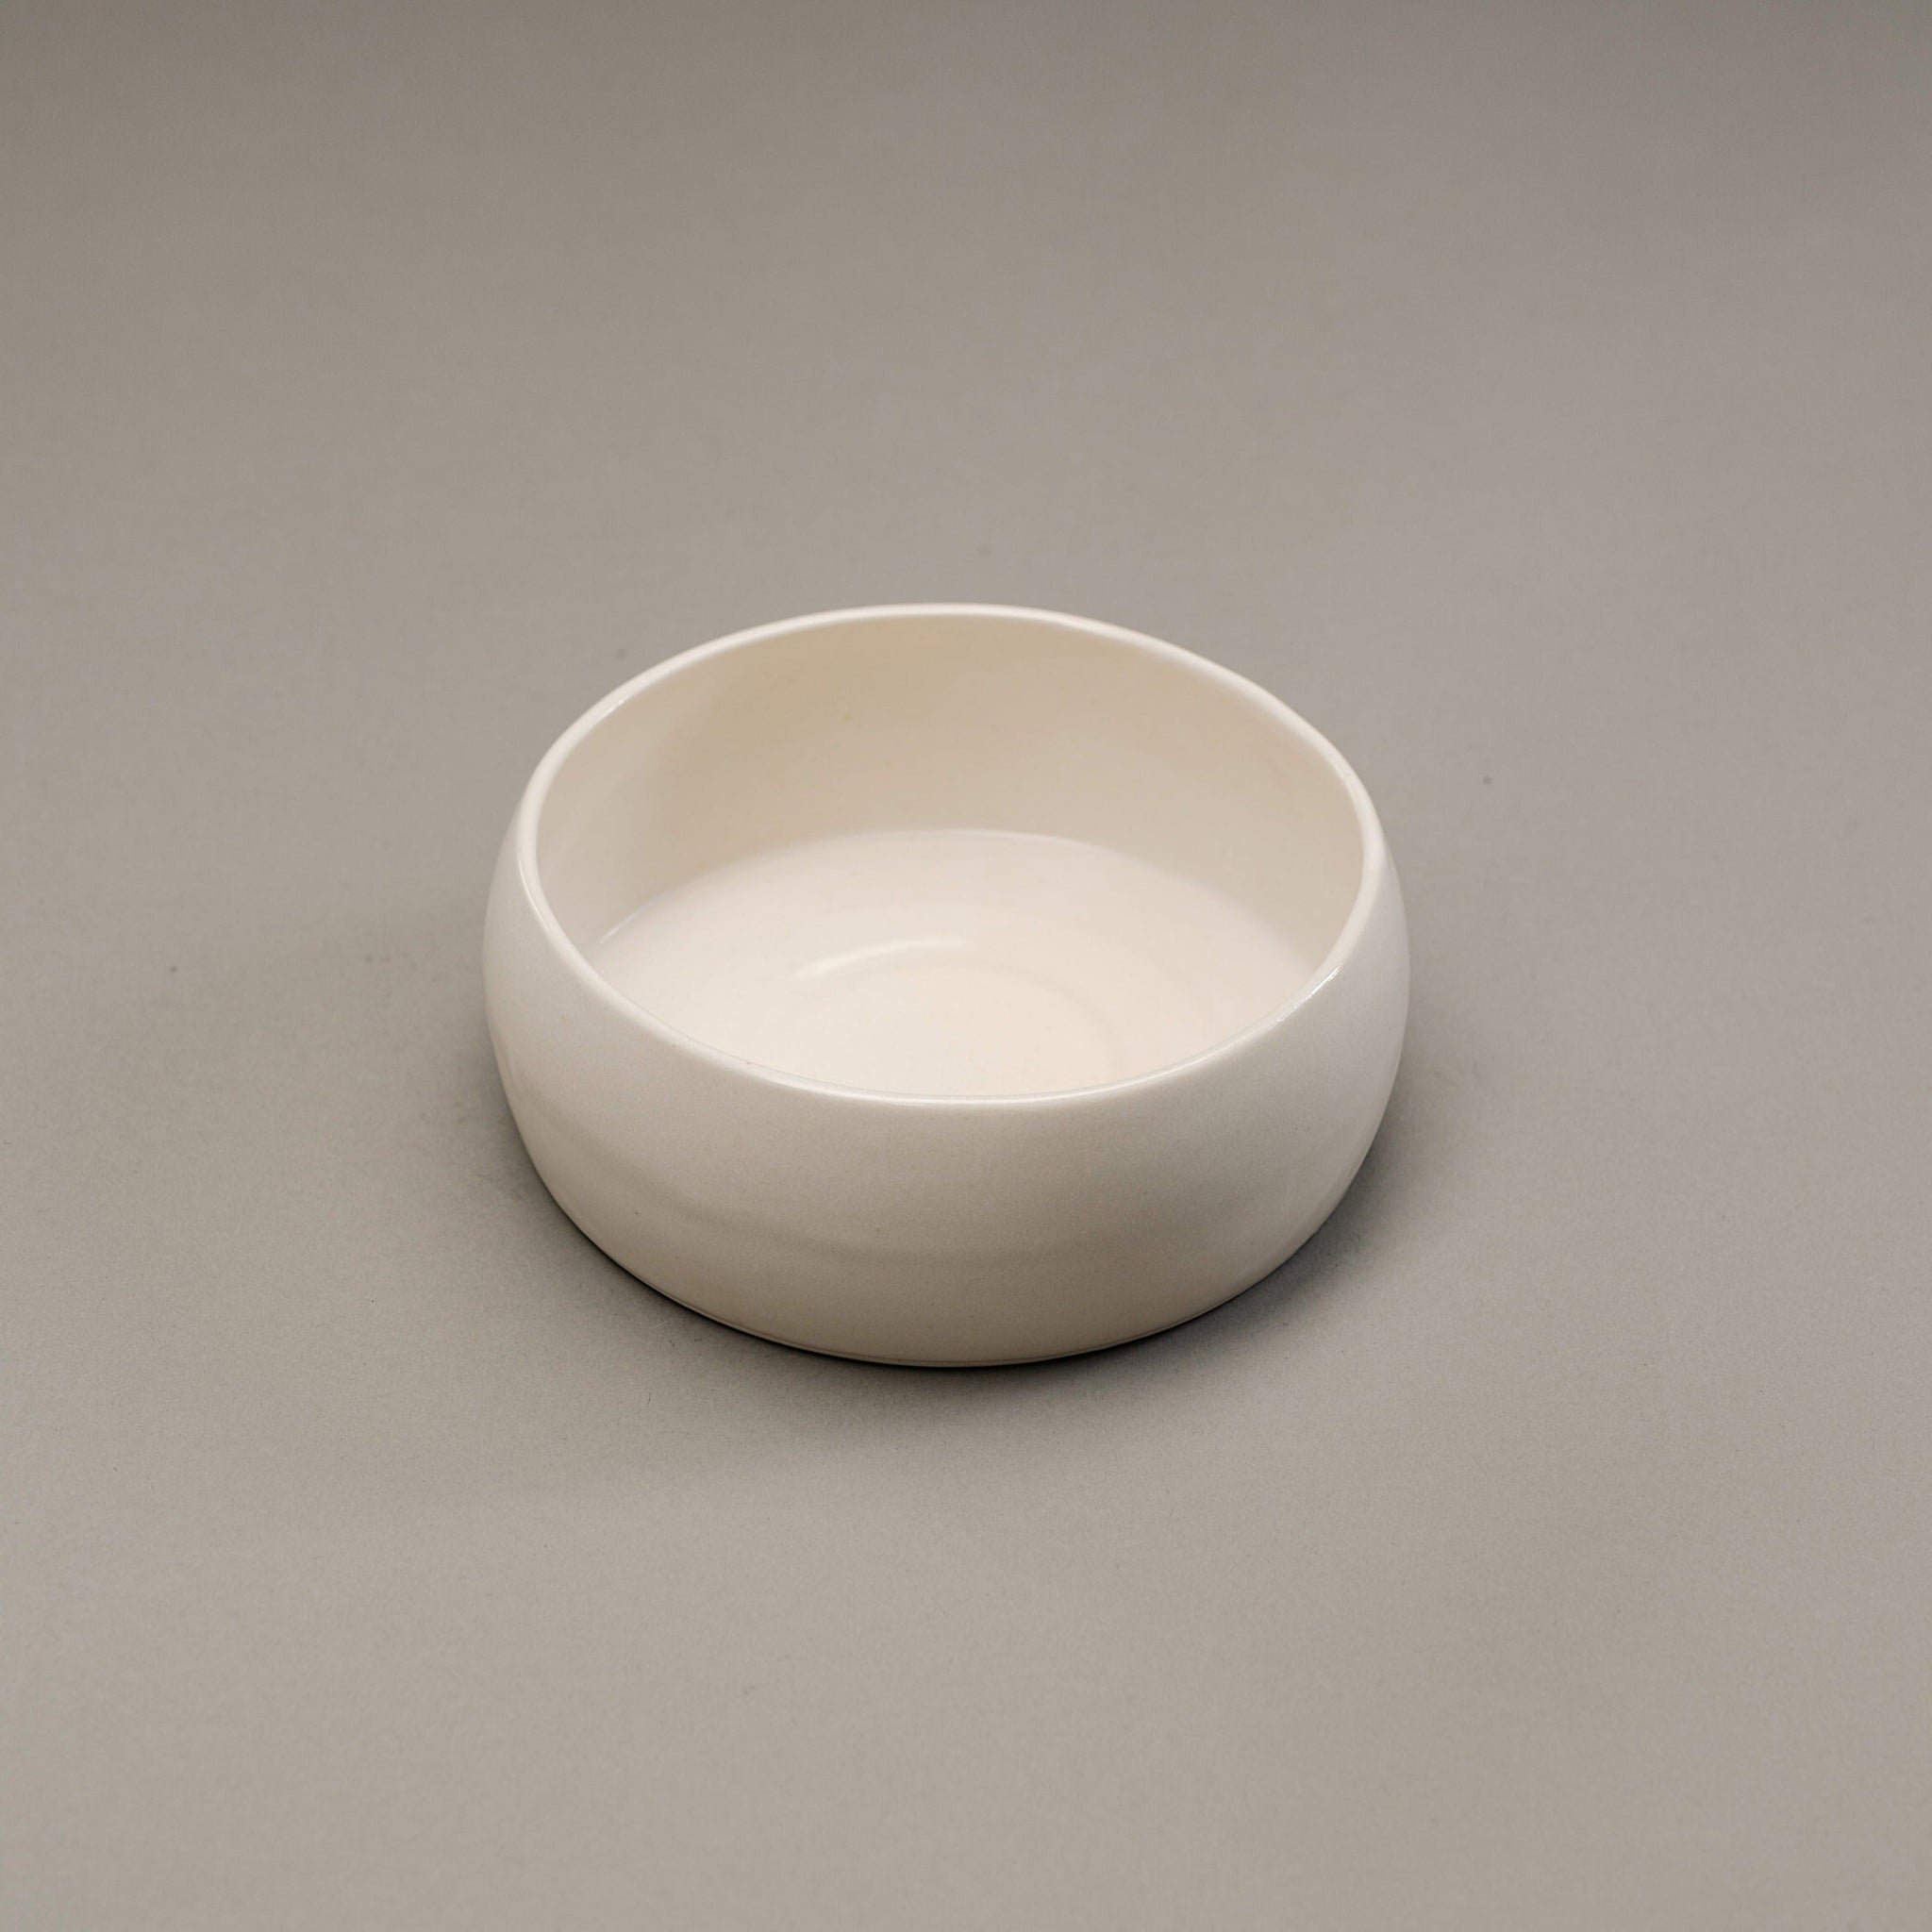 White stoneware bowl.